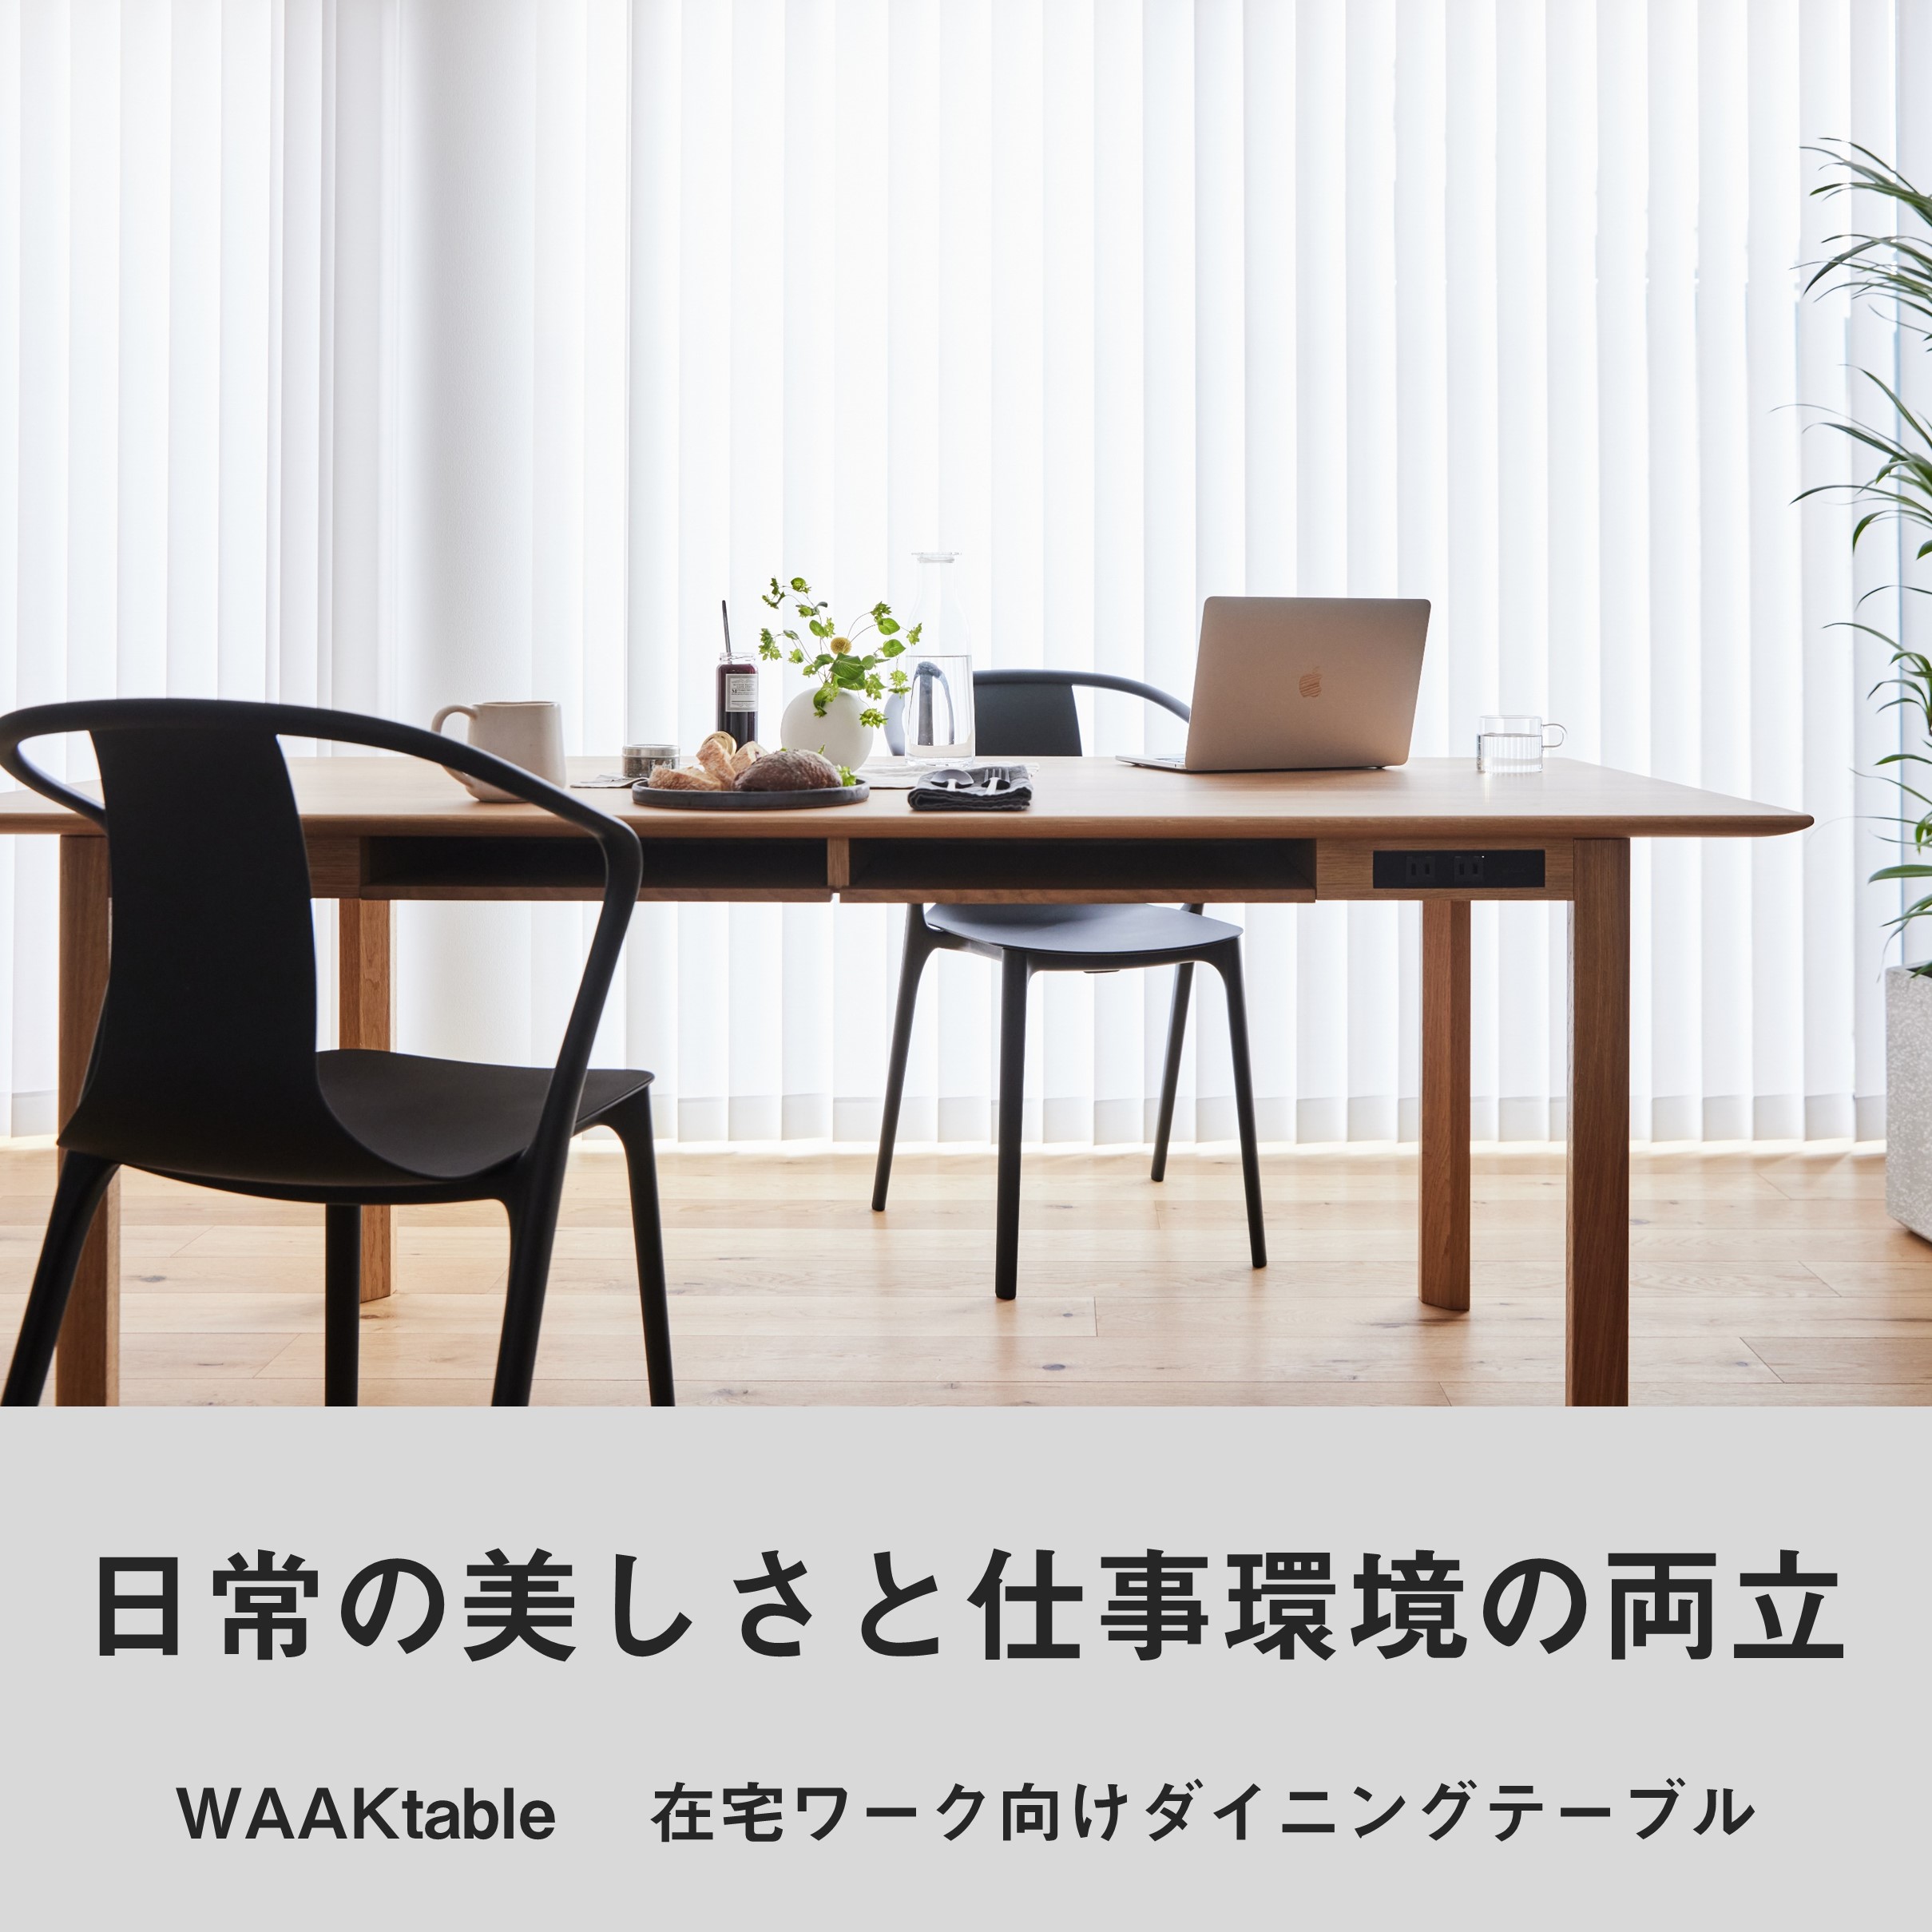 WAAKtable / 在宅ワーク向けダイニングテーブル